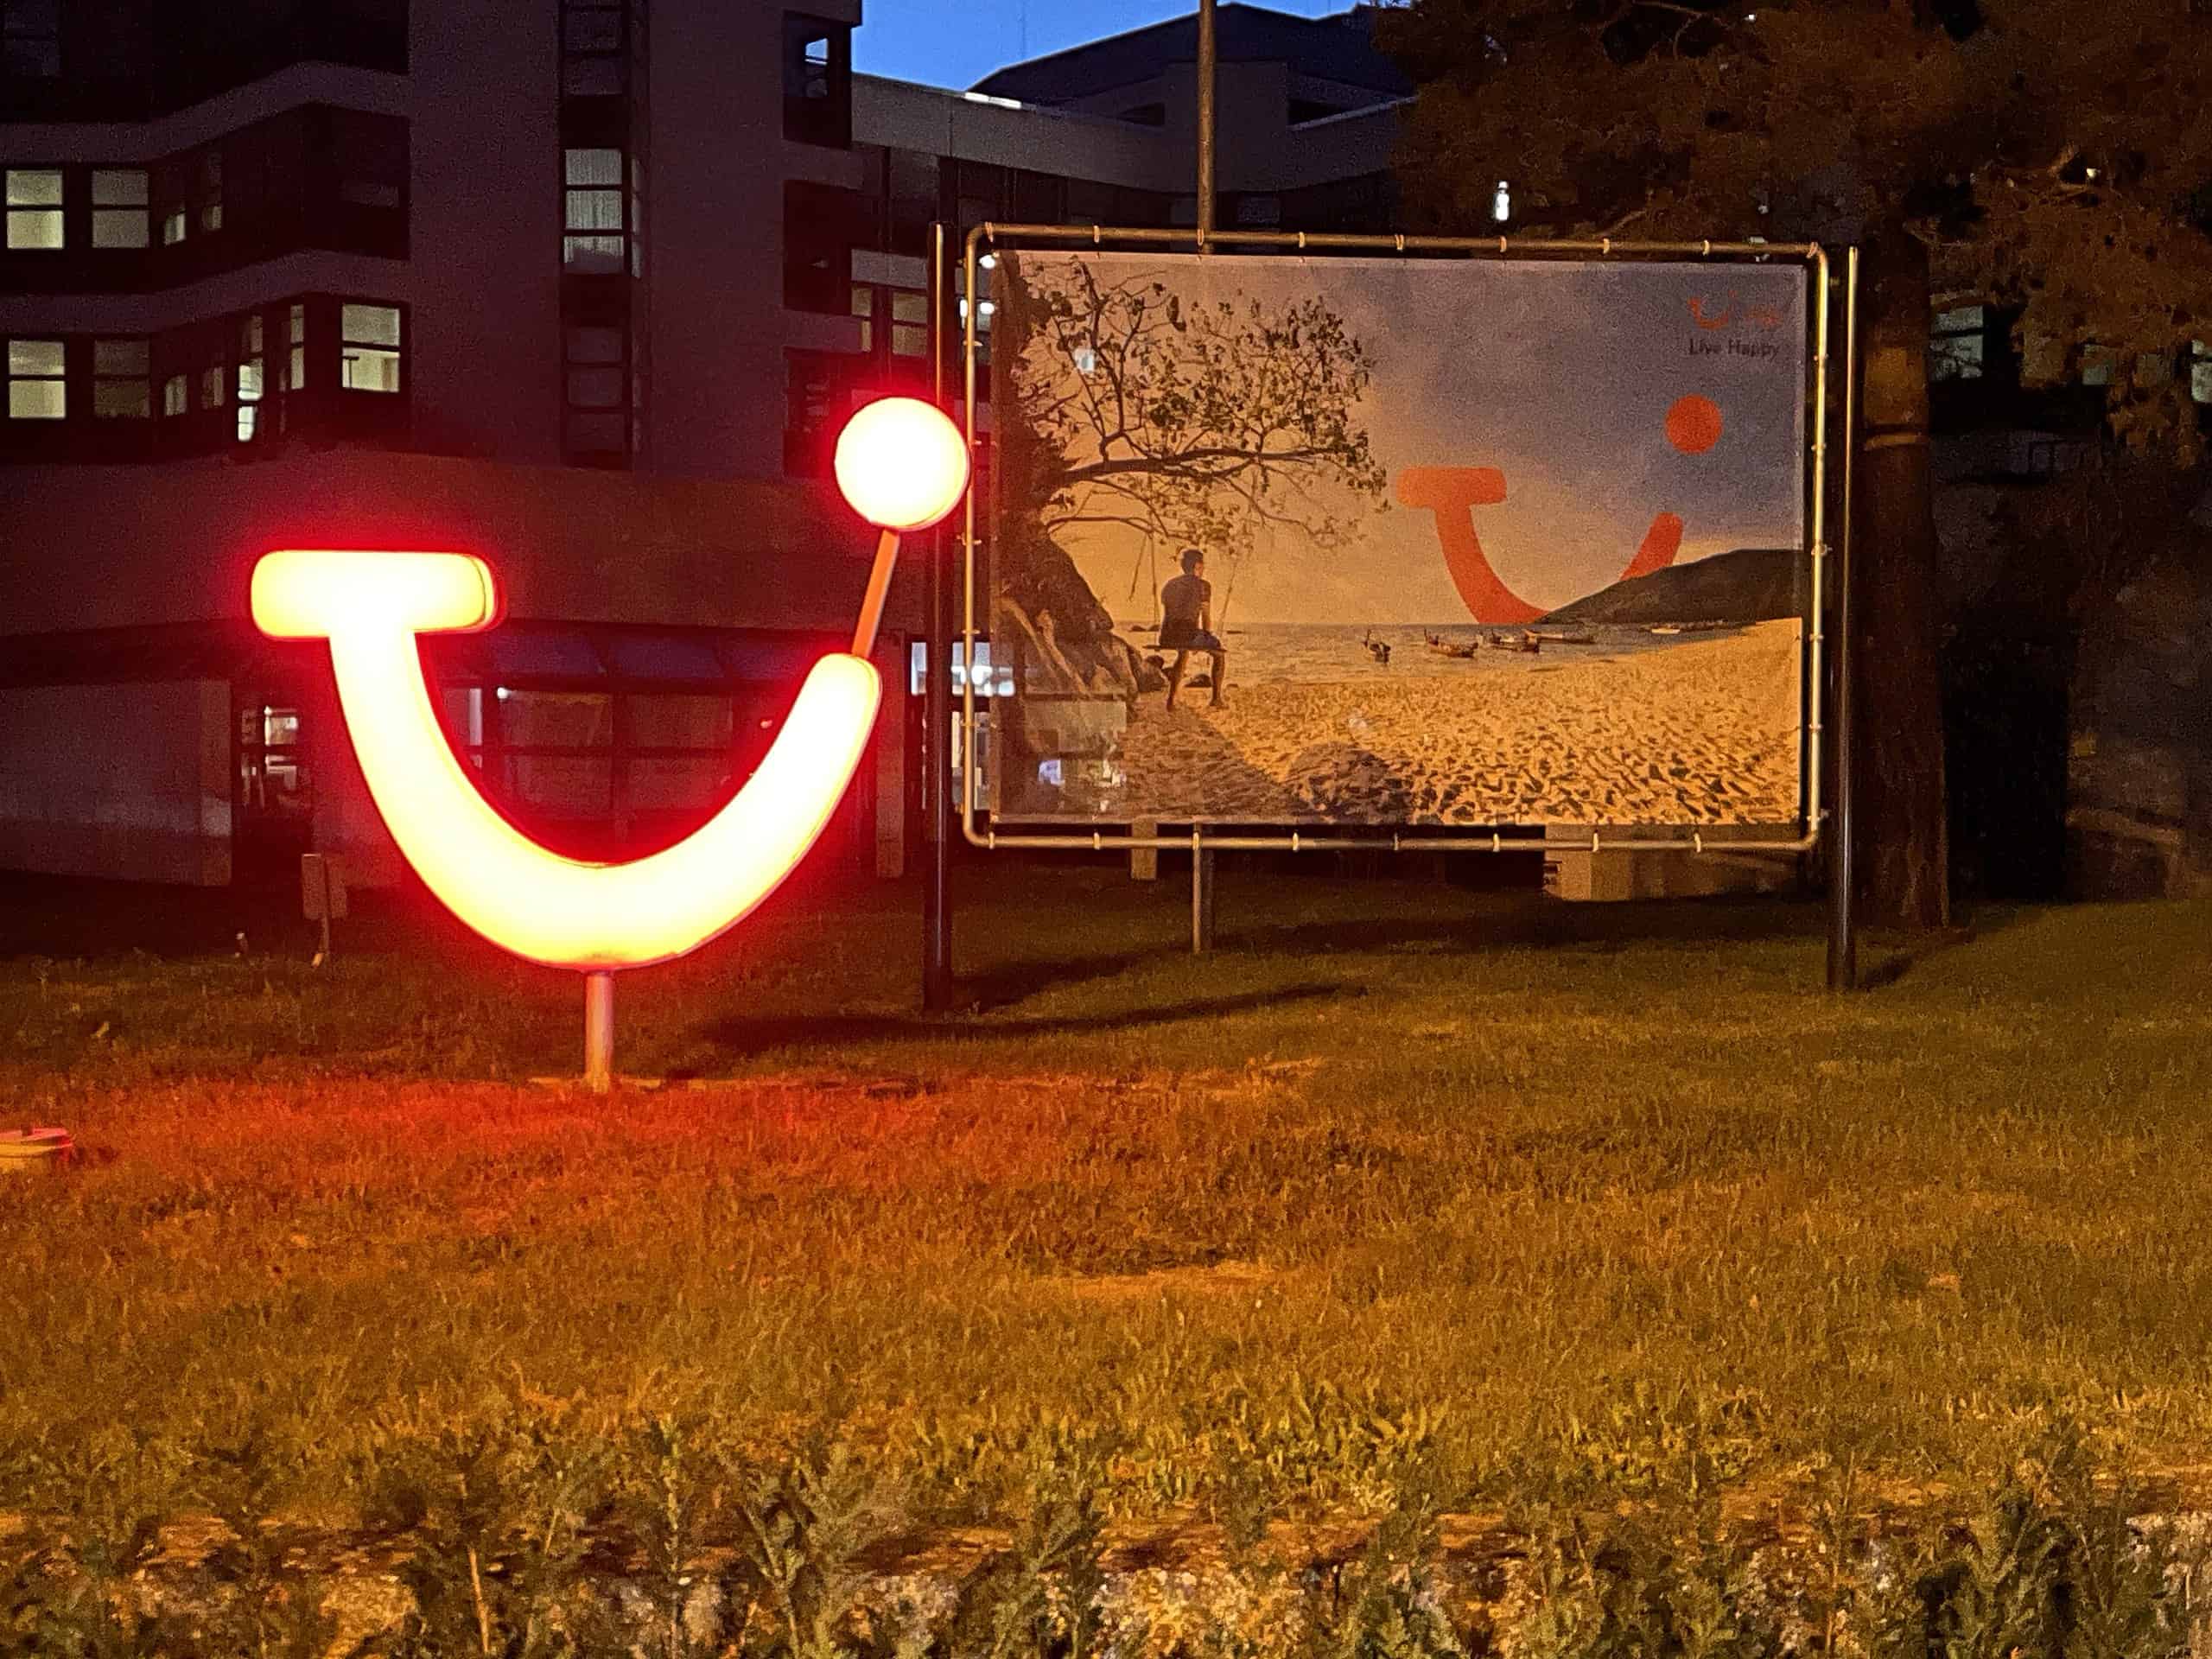 Abedlicher Blick in der Dunkelheit auf die Karl-Wiechert-Allee 23 mit helllrot leuchtendem TUI-Logo vor TUI-Werbewand. Im Hintergrund die TUI-Zentrale.